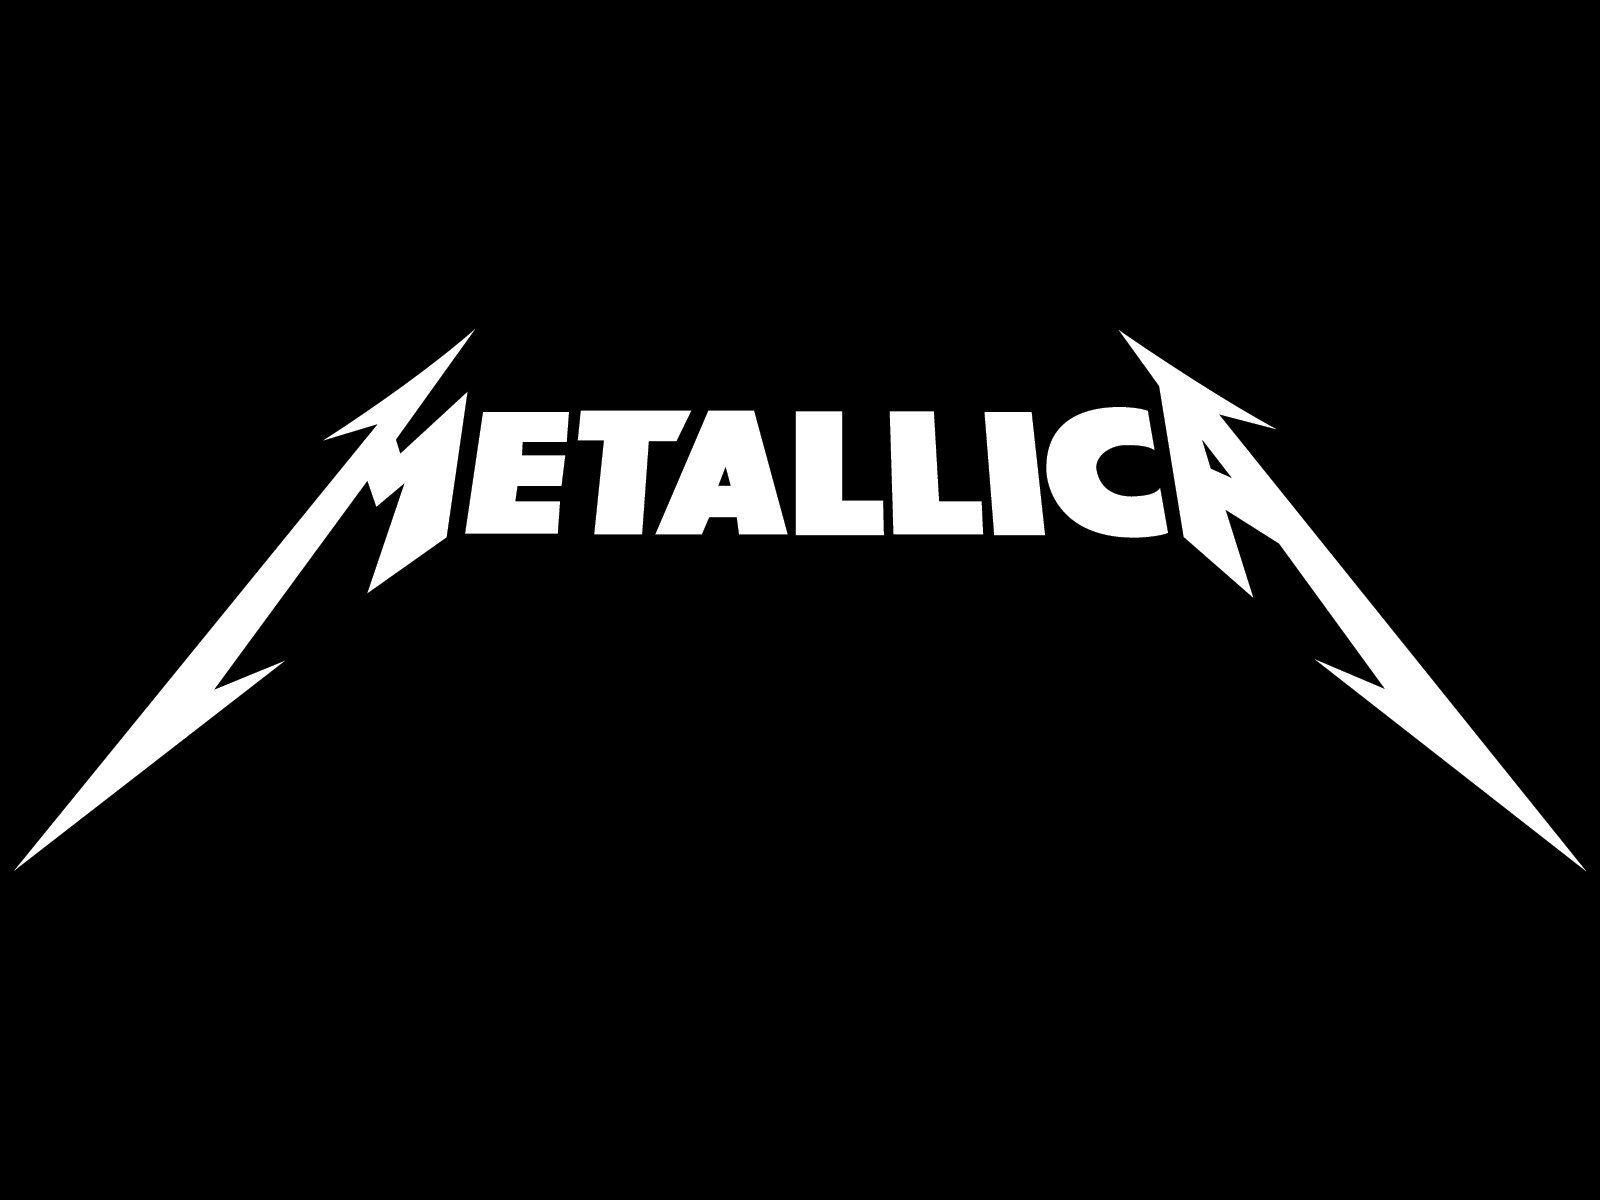 Hình nền Metallica miễn phí và đa dạng cho bạn lựa chọn. Ảnh nền độc đáo và phong phú sẽ làm cho máy tính của bạn nổi bật hơn và giúp bạn tạo nên một phong cách riêng biệt. Hãy tải ngay những bức ảnh Metallica nền chất lượng cao nhất tại đây.